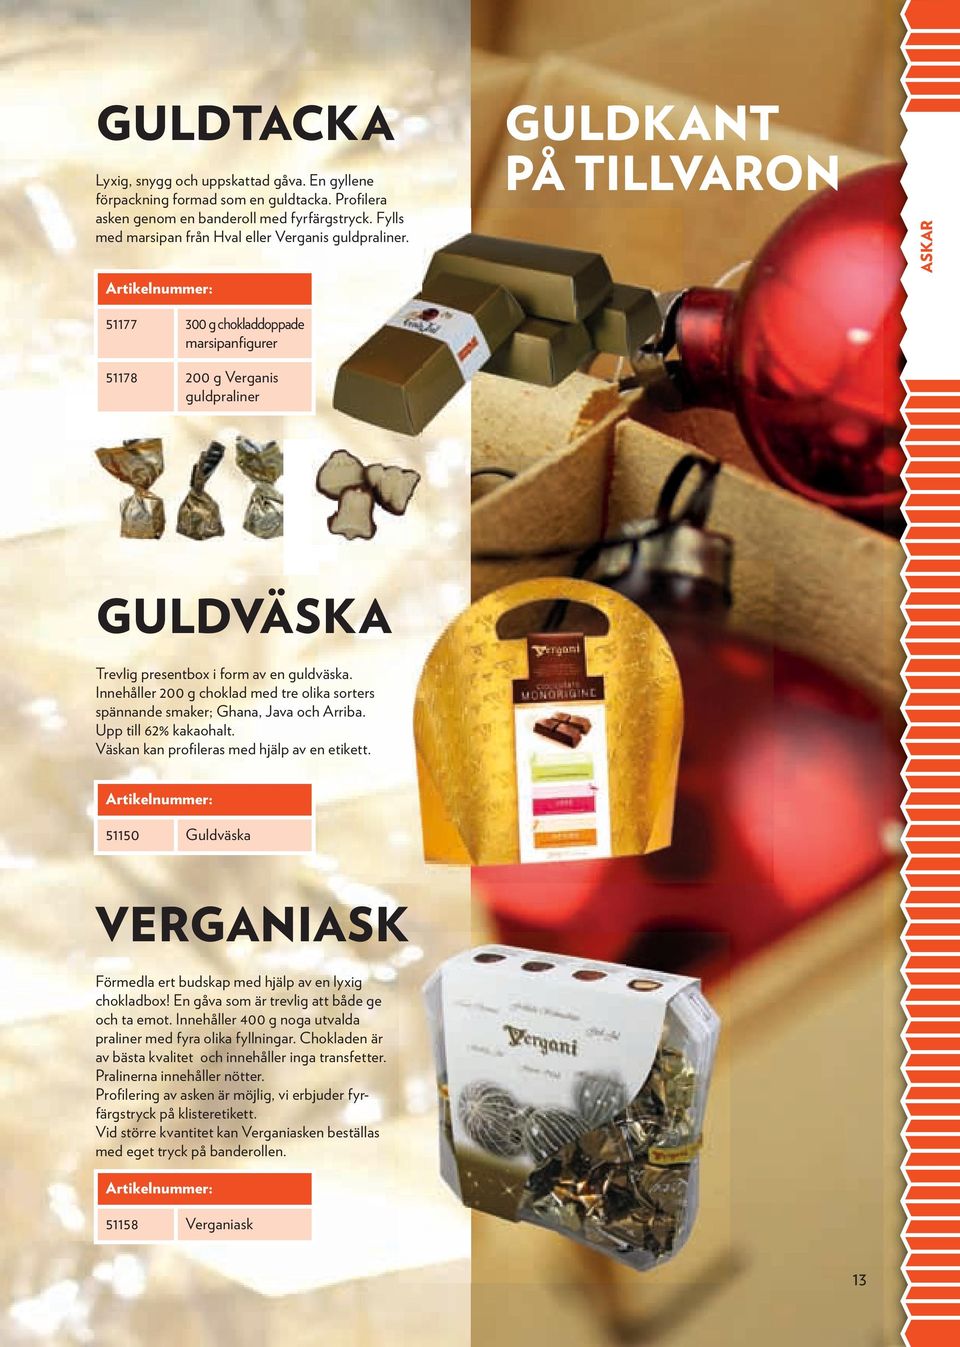 GULDKANT PÅ TILLVARON ASKAR 51177 300 g chokladdoppade marsipanfigurer 51178 200 g Verganis guldpraliner GULDVäSKA Trevlig presentbox i form av en guldväska.